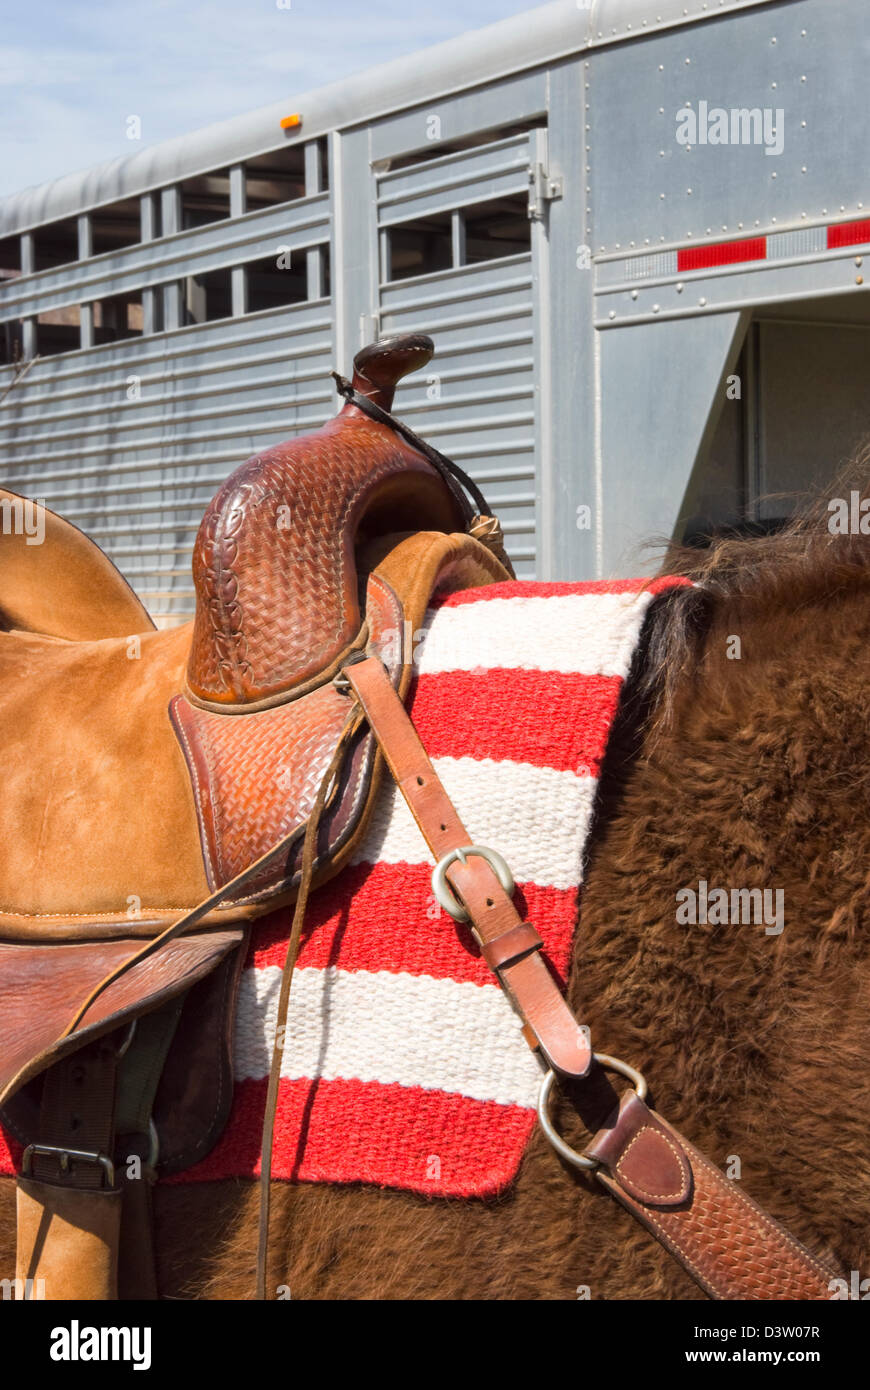 En vertu de l'cheval selle western prêt pour l'rider, drapeau américain sous couverture et la remorque derrière. Banque D'Images